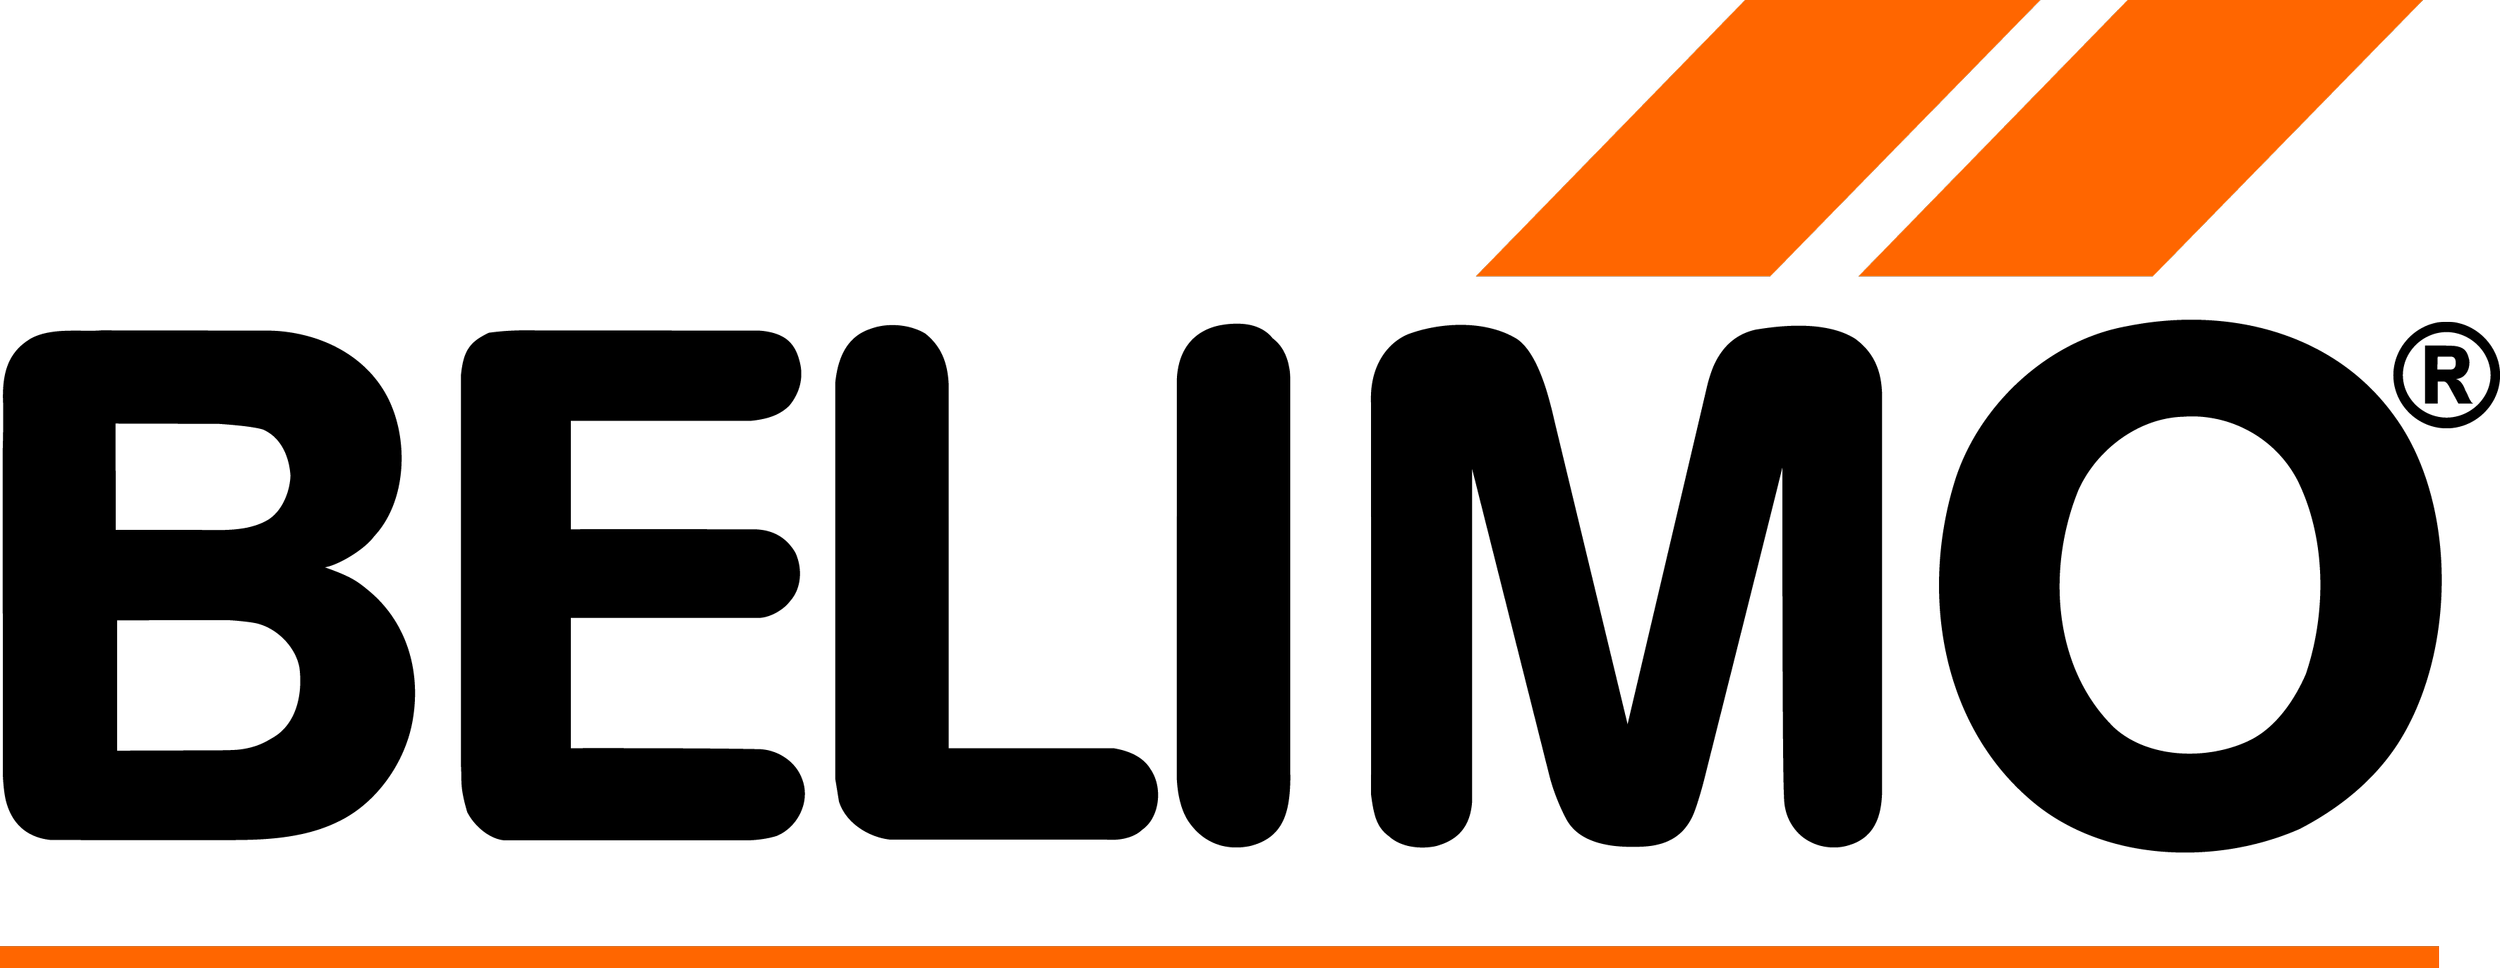 Belimo Logo 11-2021.png